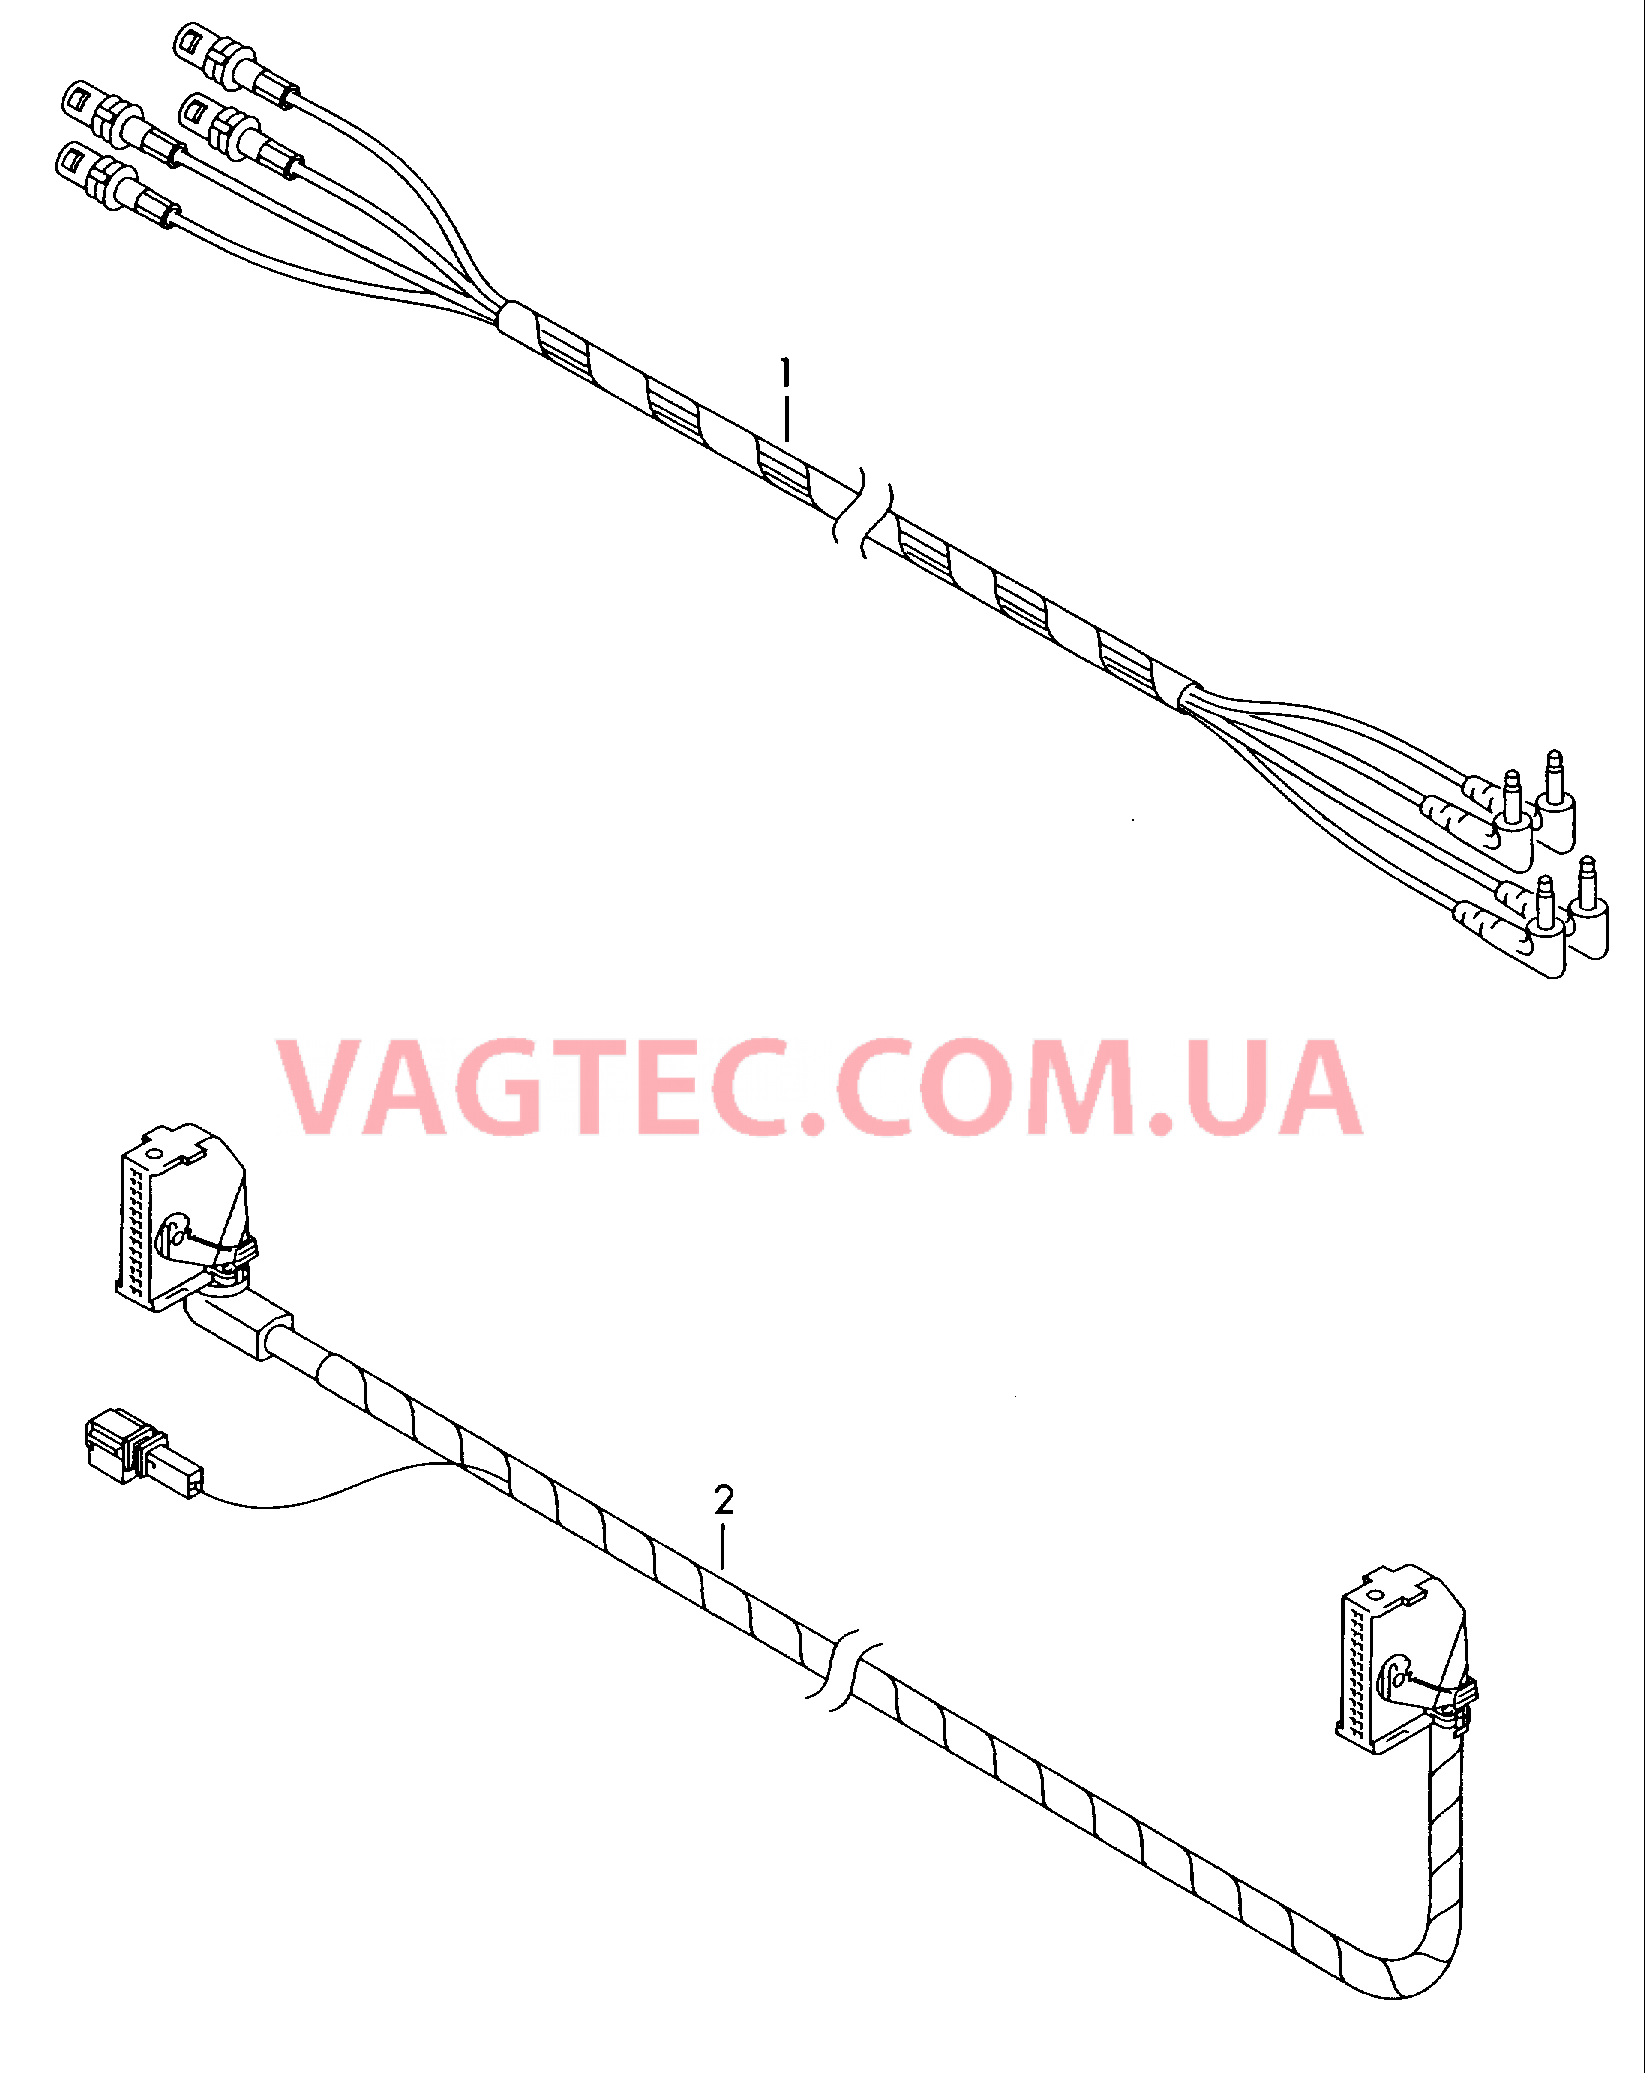 Жгут проводов системы навигации         также см. иллюстрацию:  для VOLKSWAGEN Passat 2000